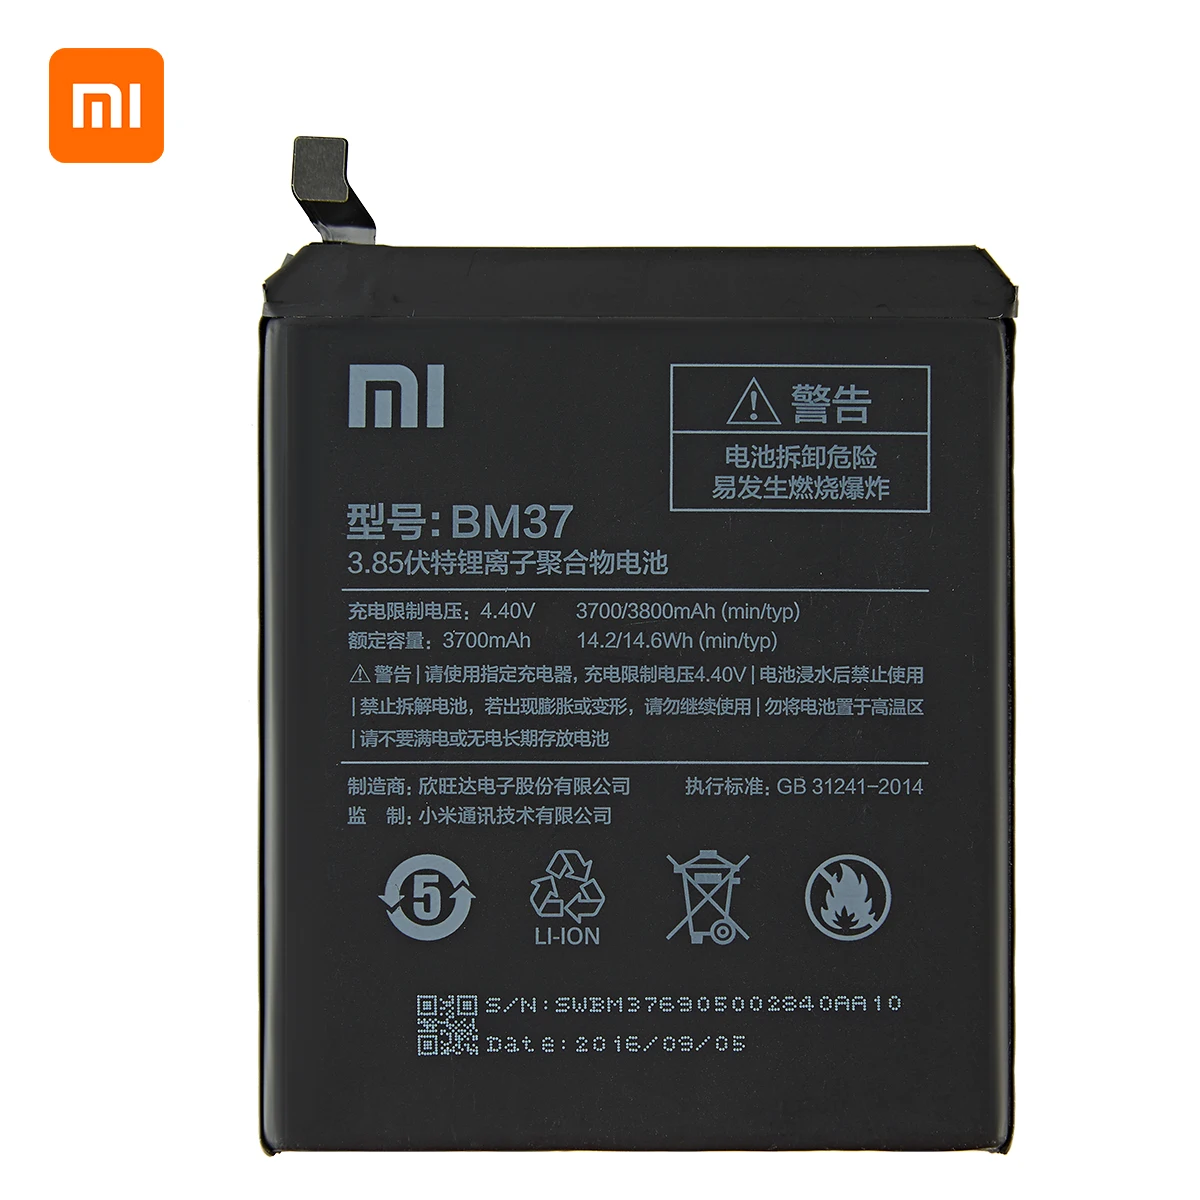 Xiao mi Originalus BM37 Baterija 3800mAh Xiaomi Mi 5S Plius MI5S Plius BM37 Aukštos Kokybės Telefoną Pakeisti Baterijas +Įrankiai